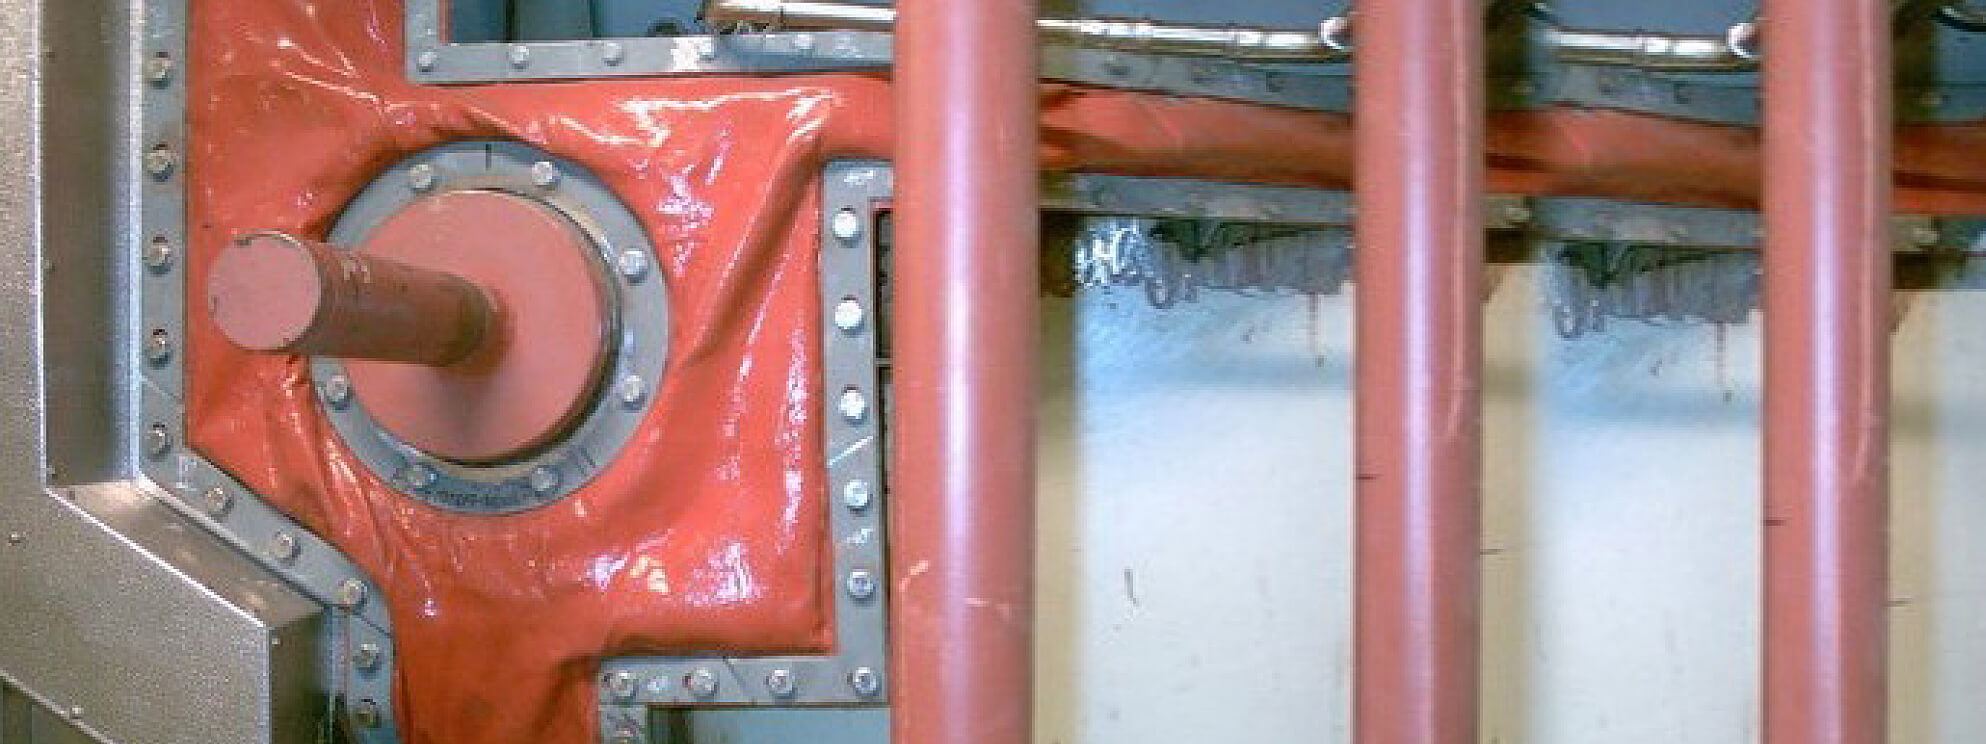 Frenzelit Weichstoffkompensatoren als Kesselabdichtung eingebaut:Sammelrollerdurchtritt am Boiler